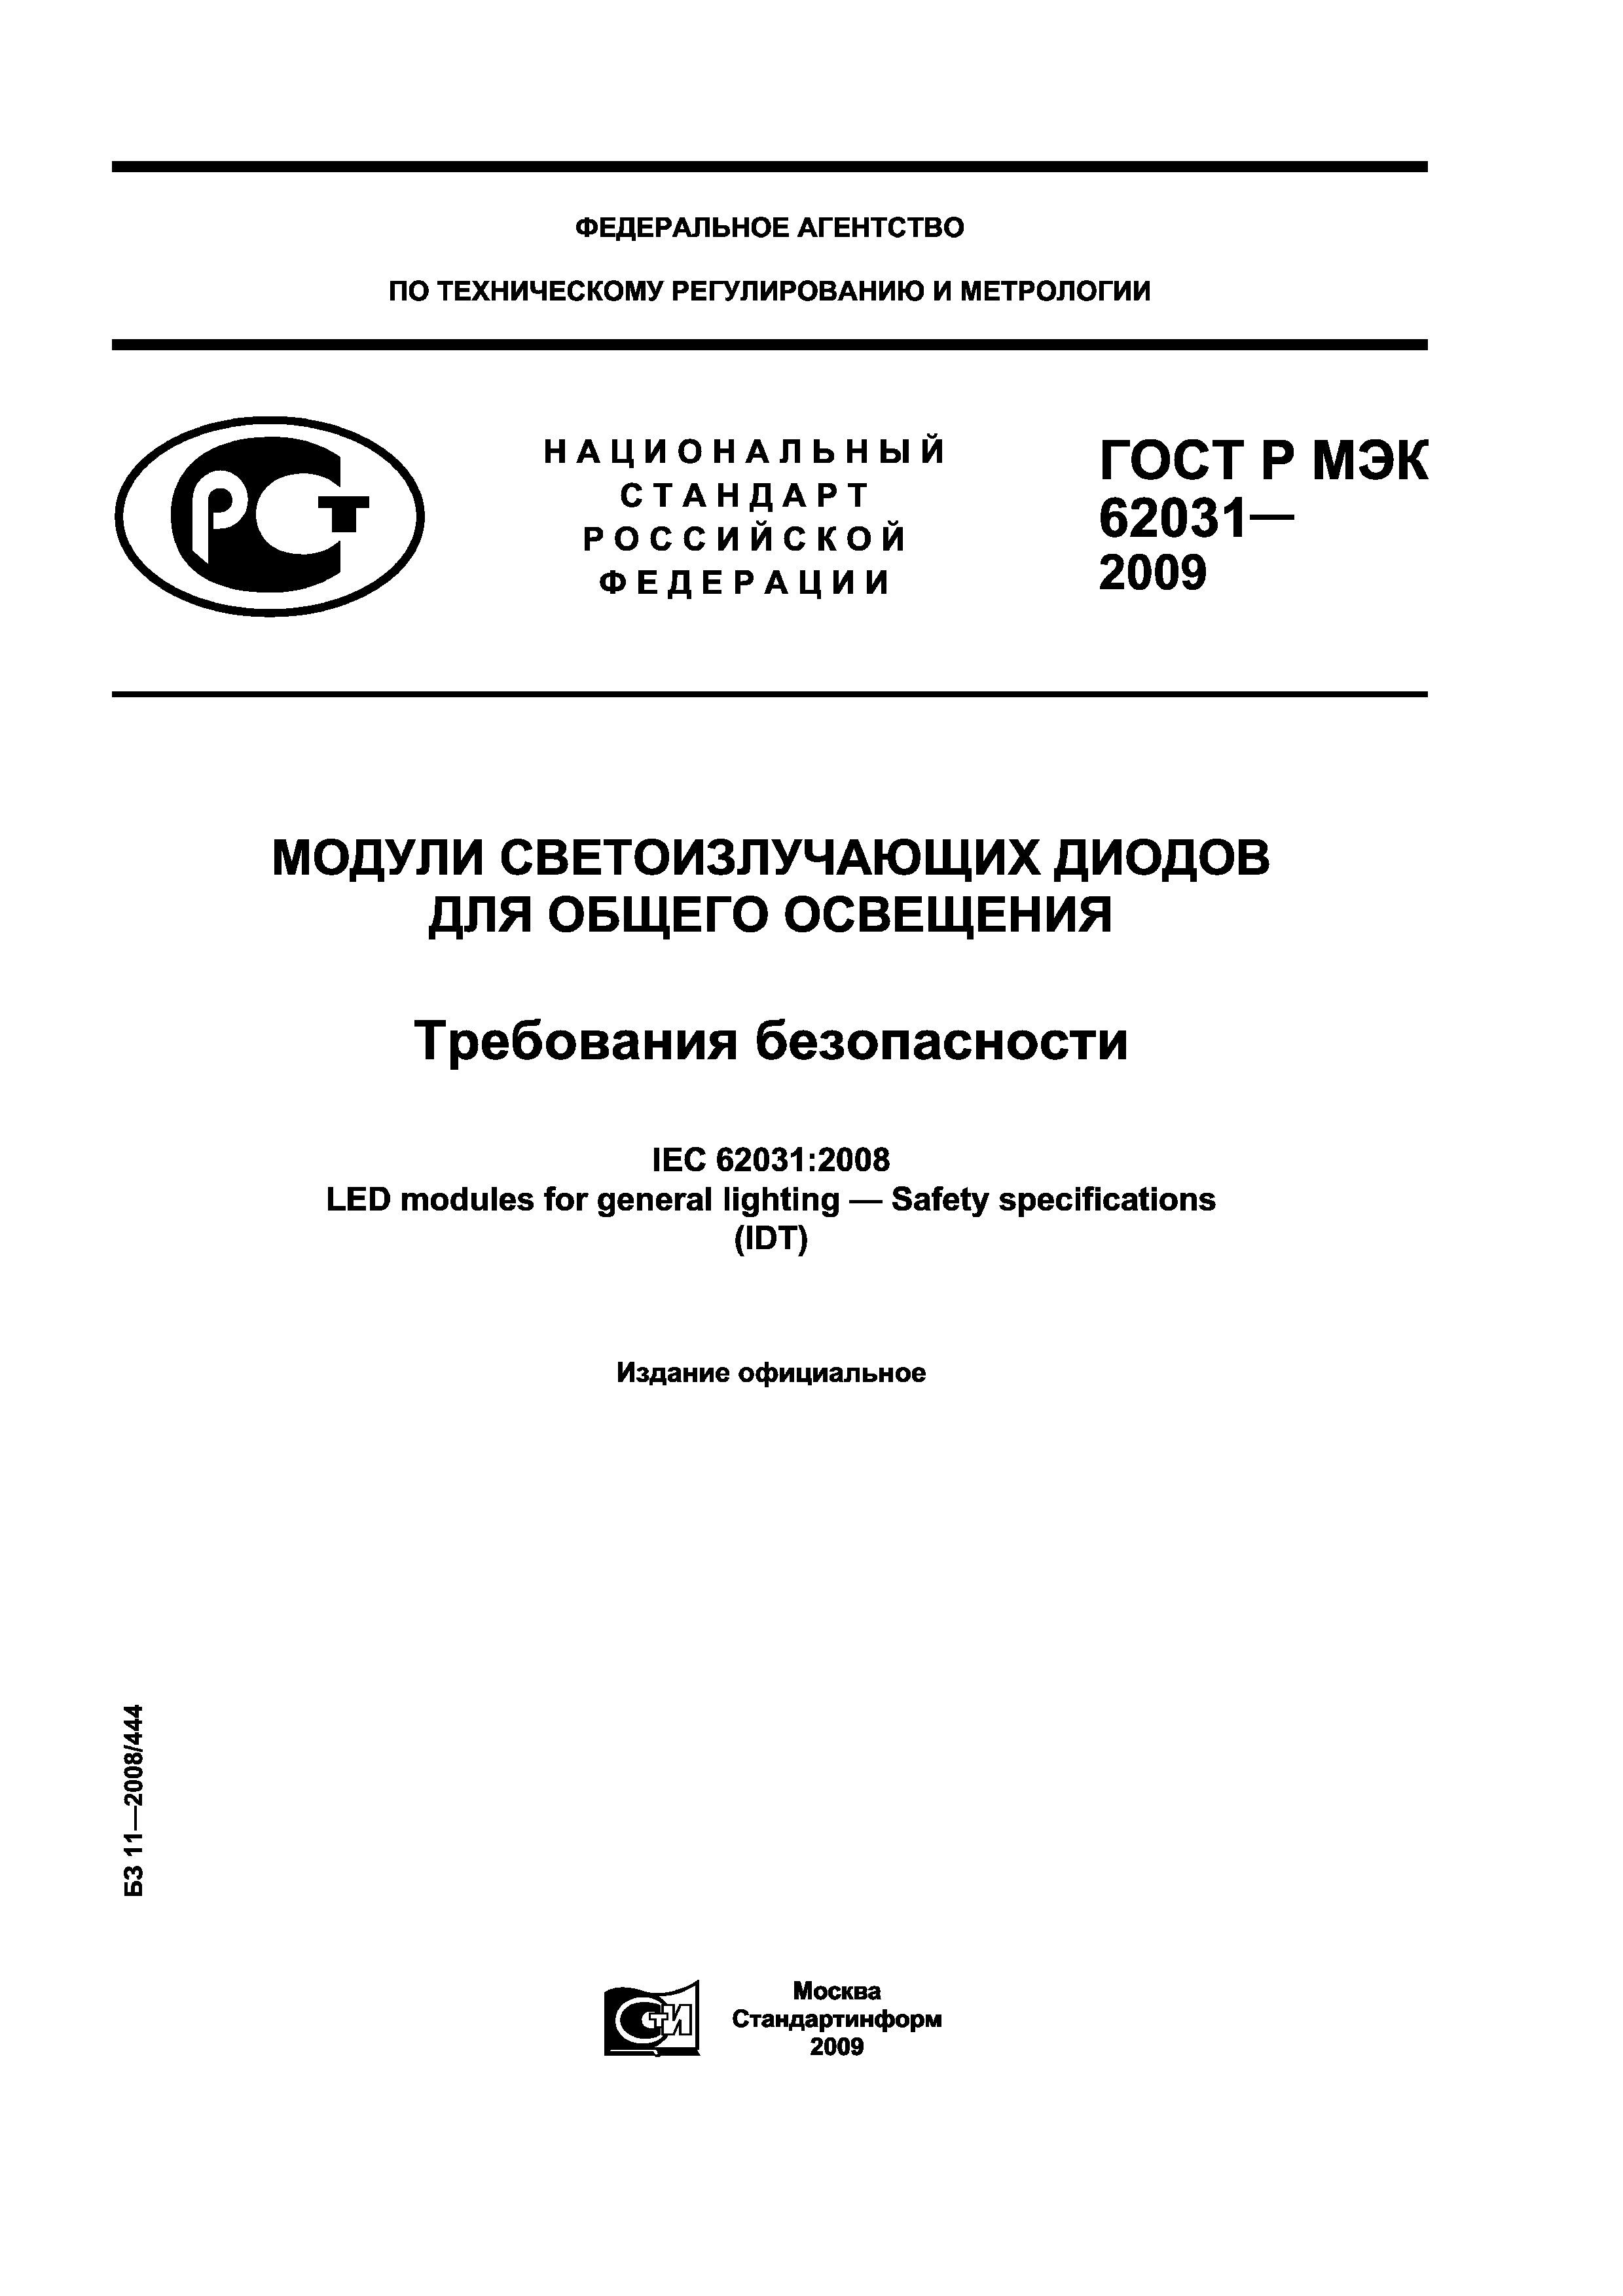 ГОСТ Р МЭК 62031-2009